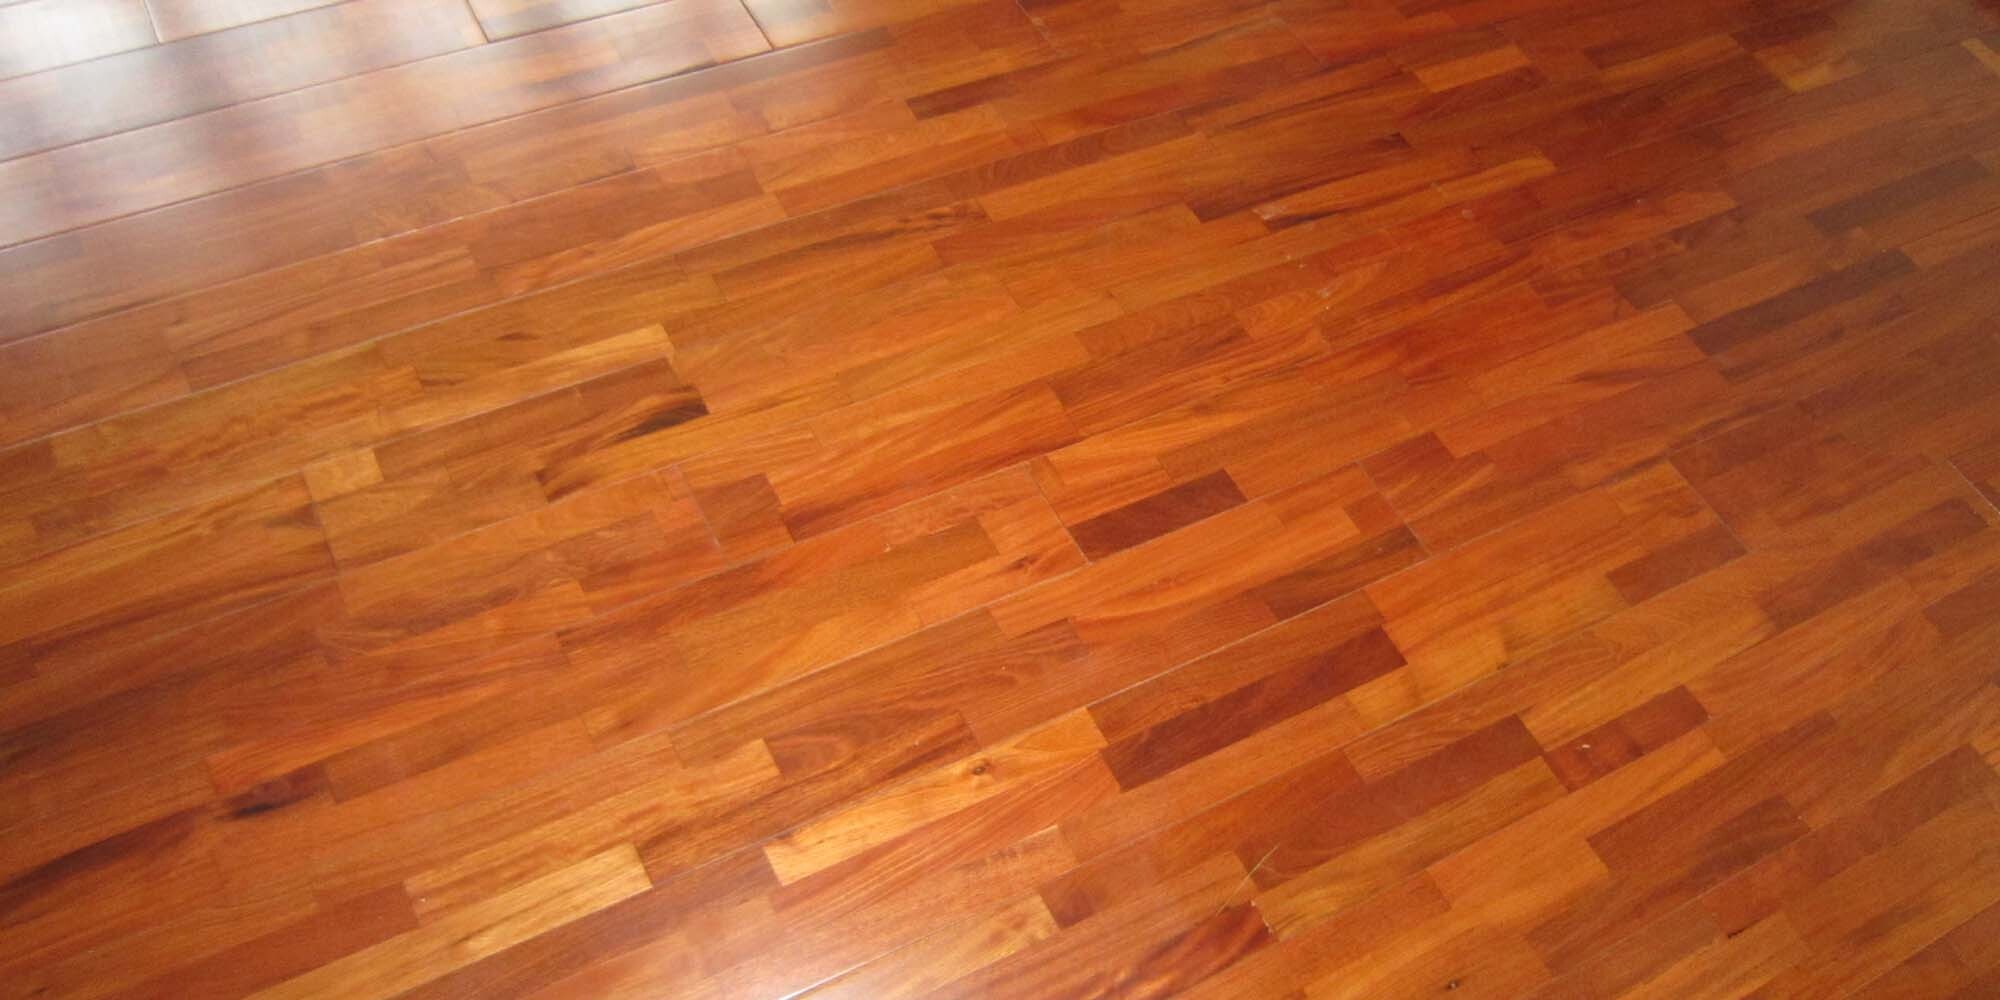 Sàn gỗ giáng Hương Lào 15x90x750mm